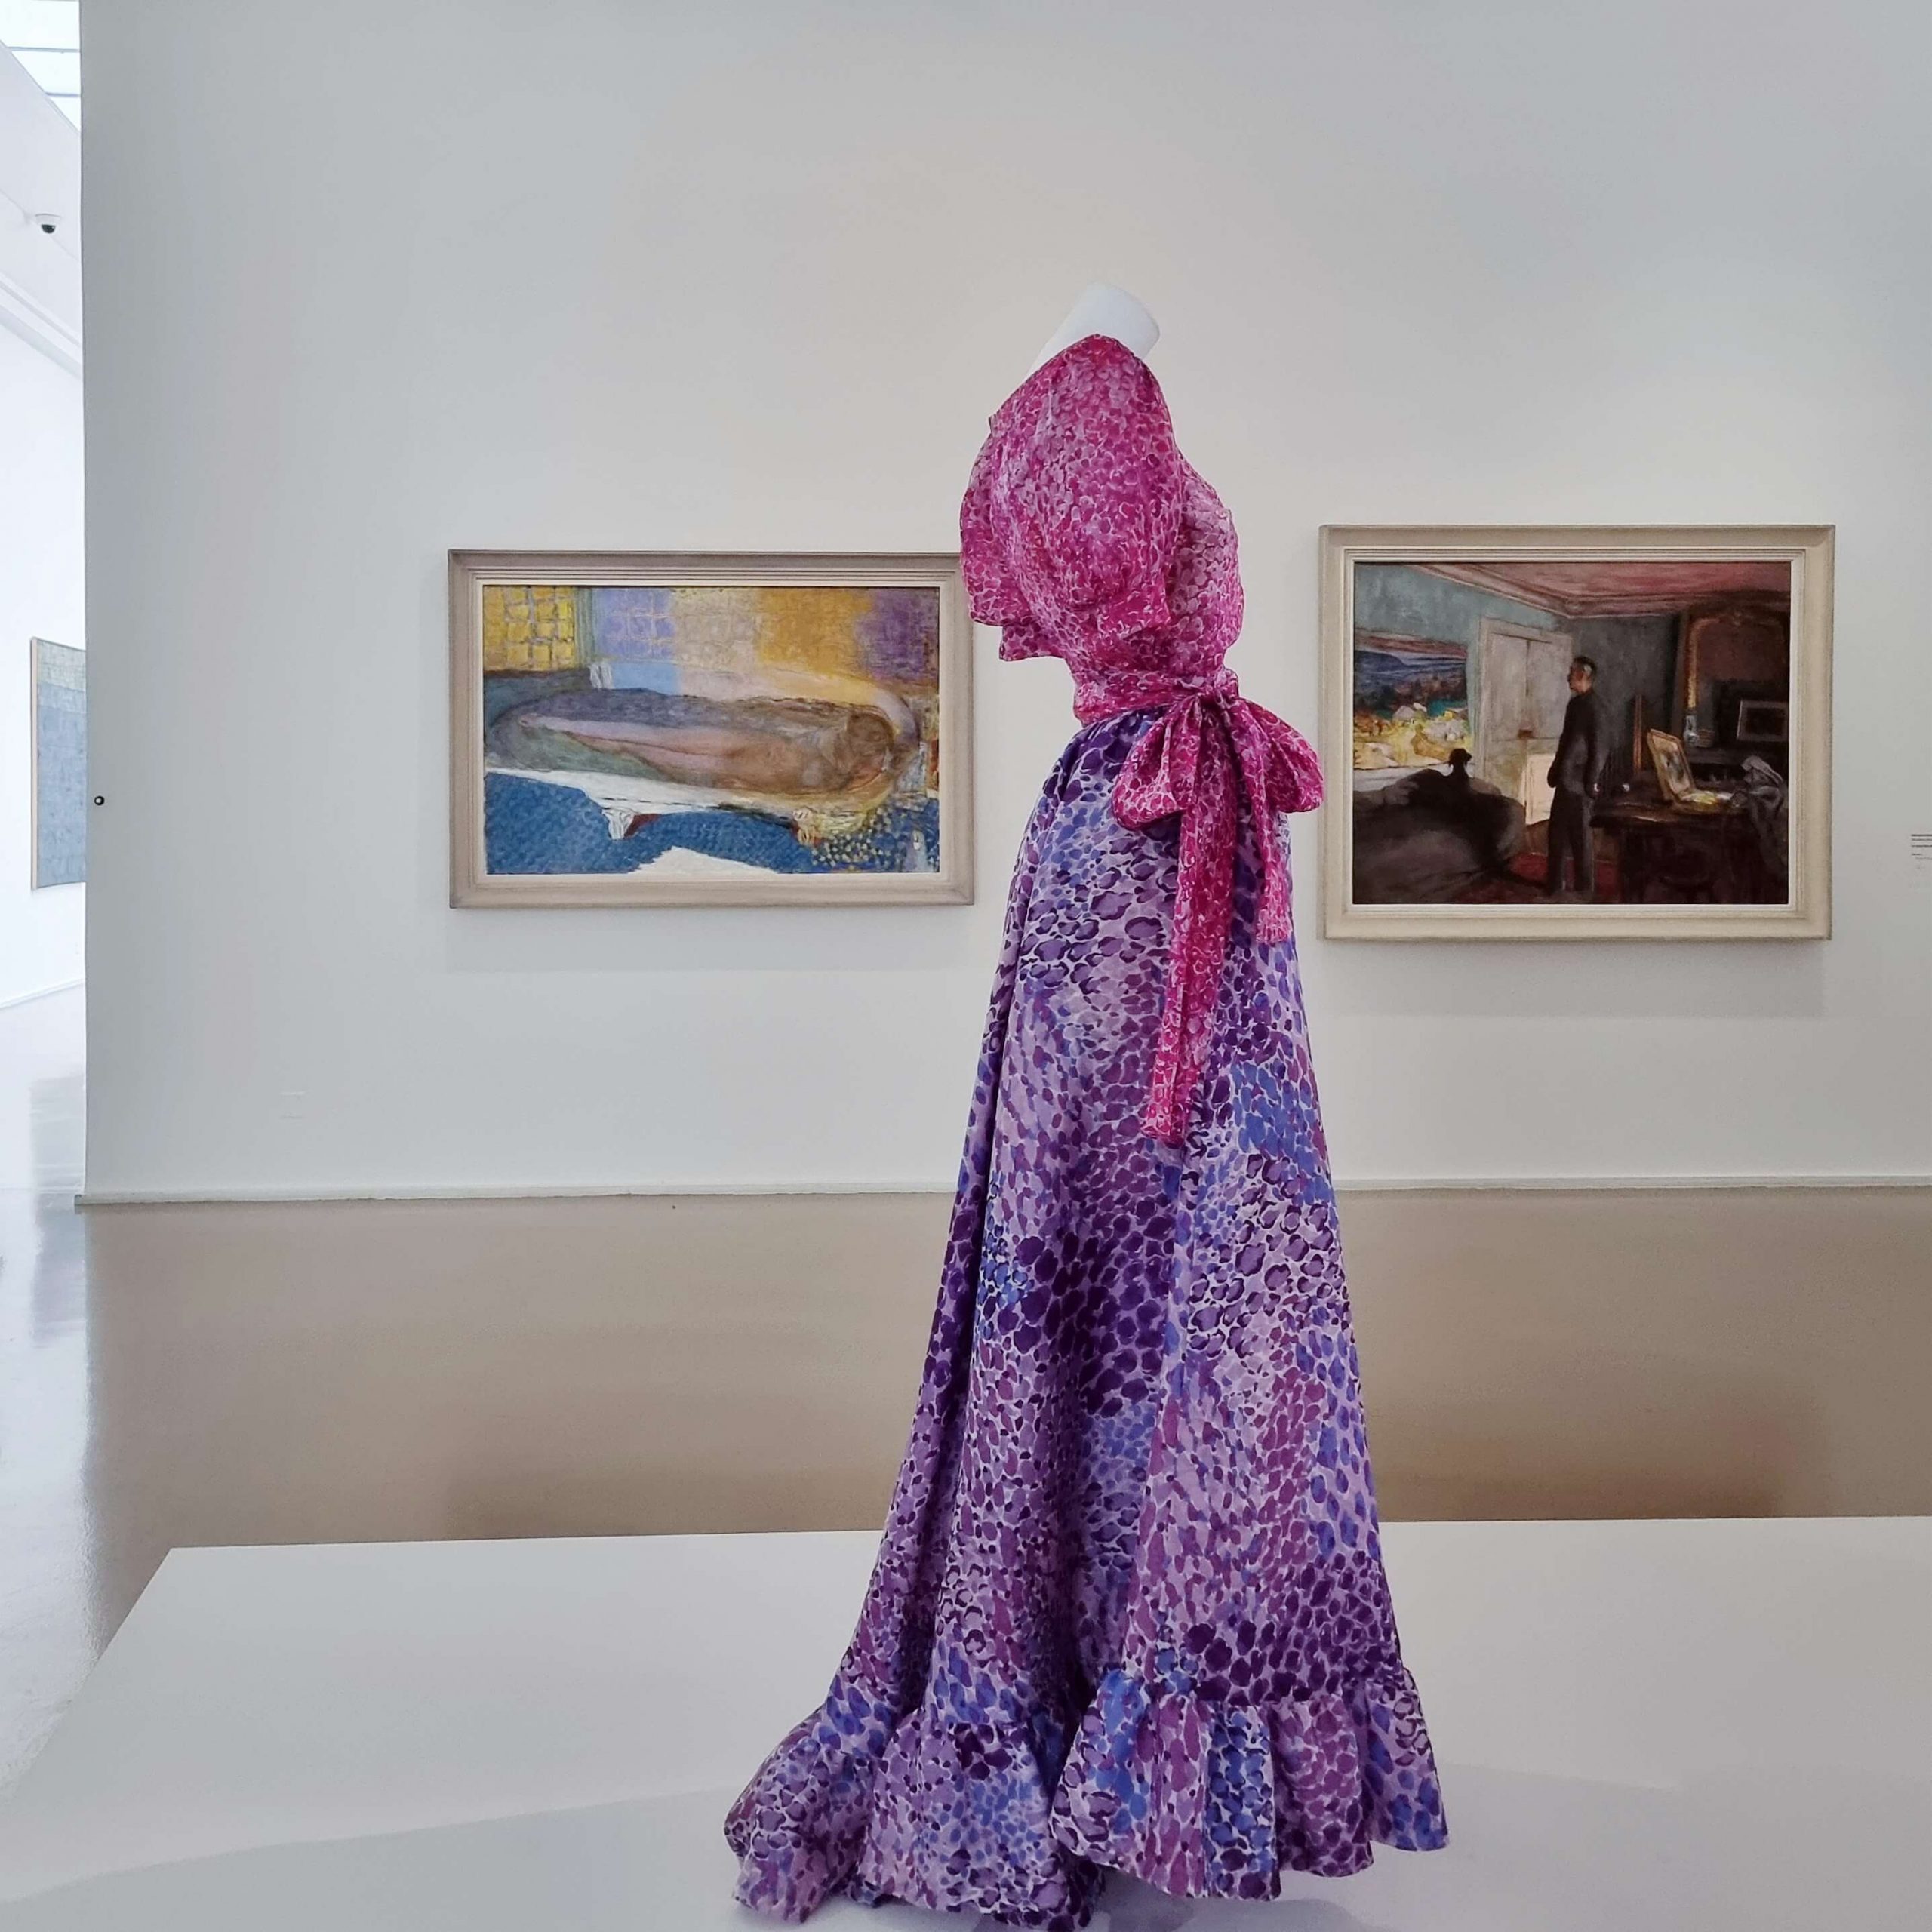 Exhibition view / Yves Saint Laurent aux Musées / MAM, Paris, 2022